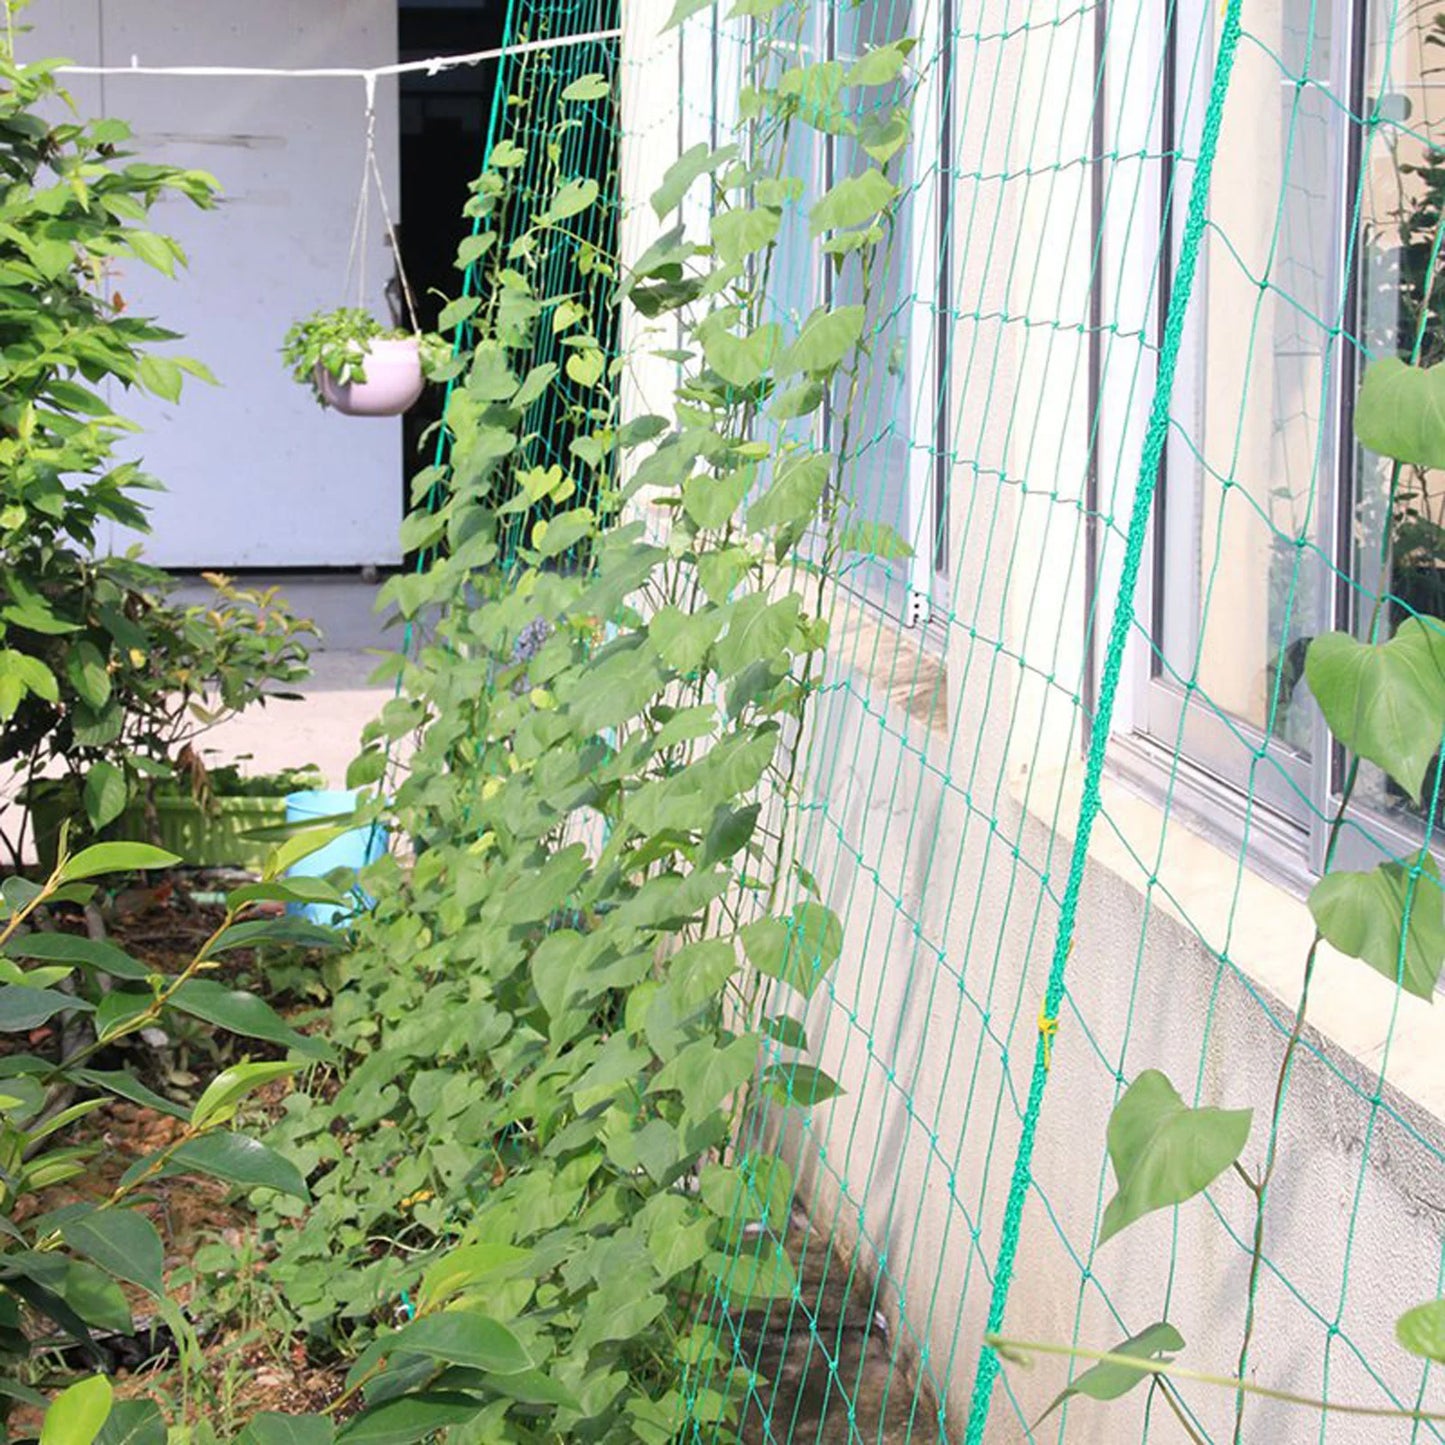 Víncula de la planta de jardín Vine en crecimiento de la planta resistente Soporte del enrejado Soporte de pepino colgante Suministros de jardín de la red